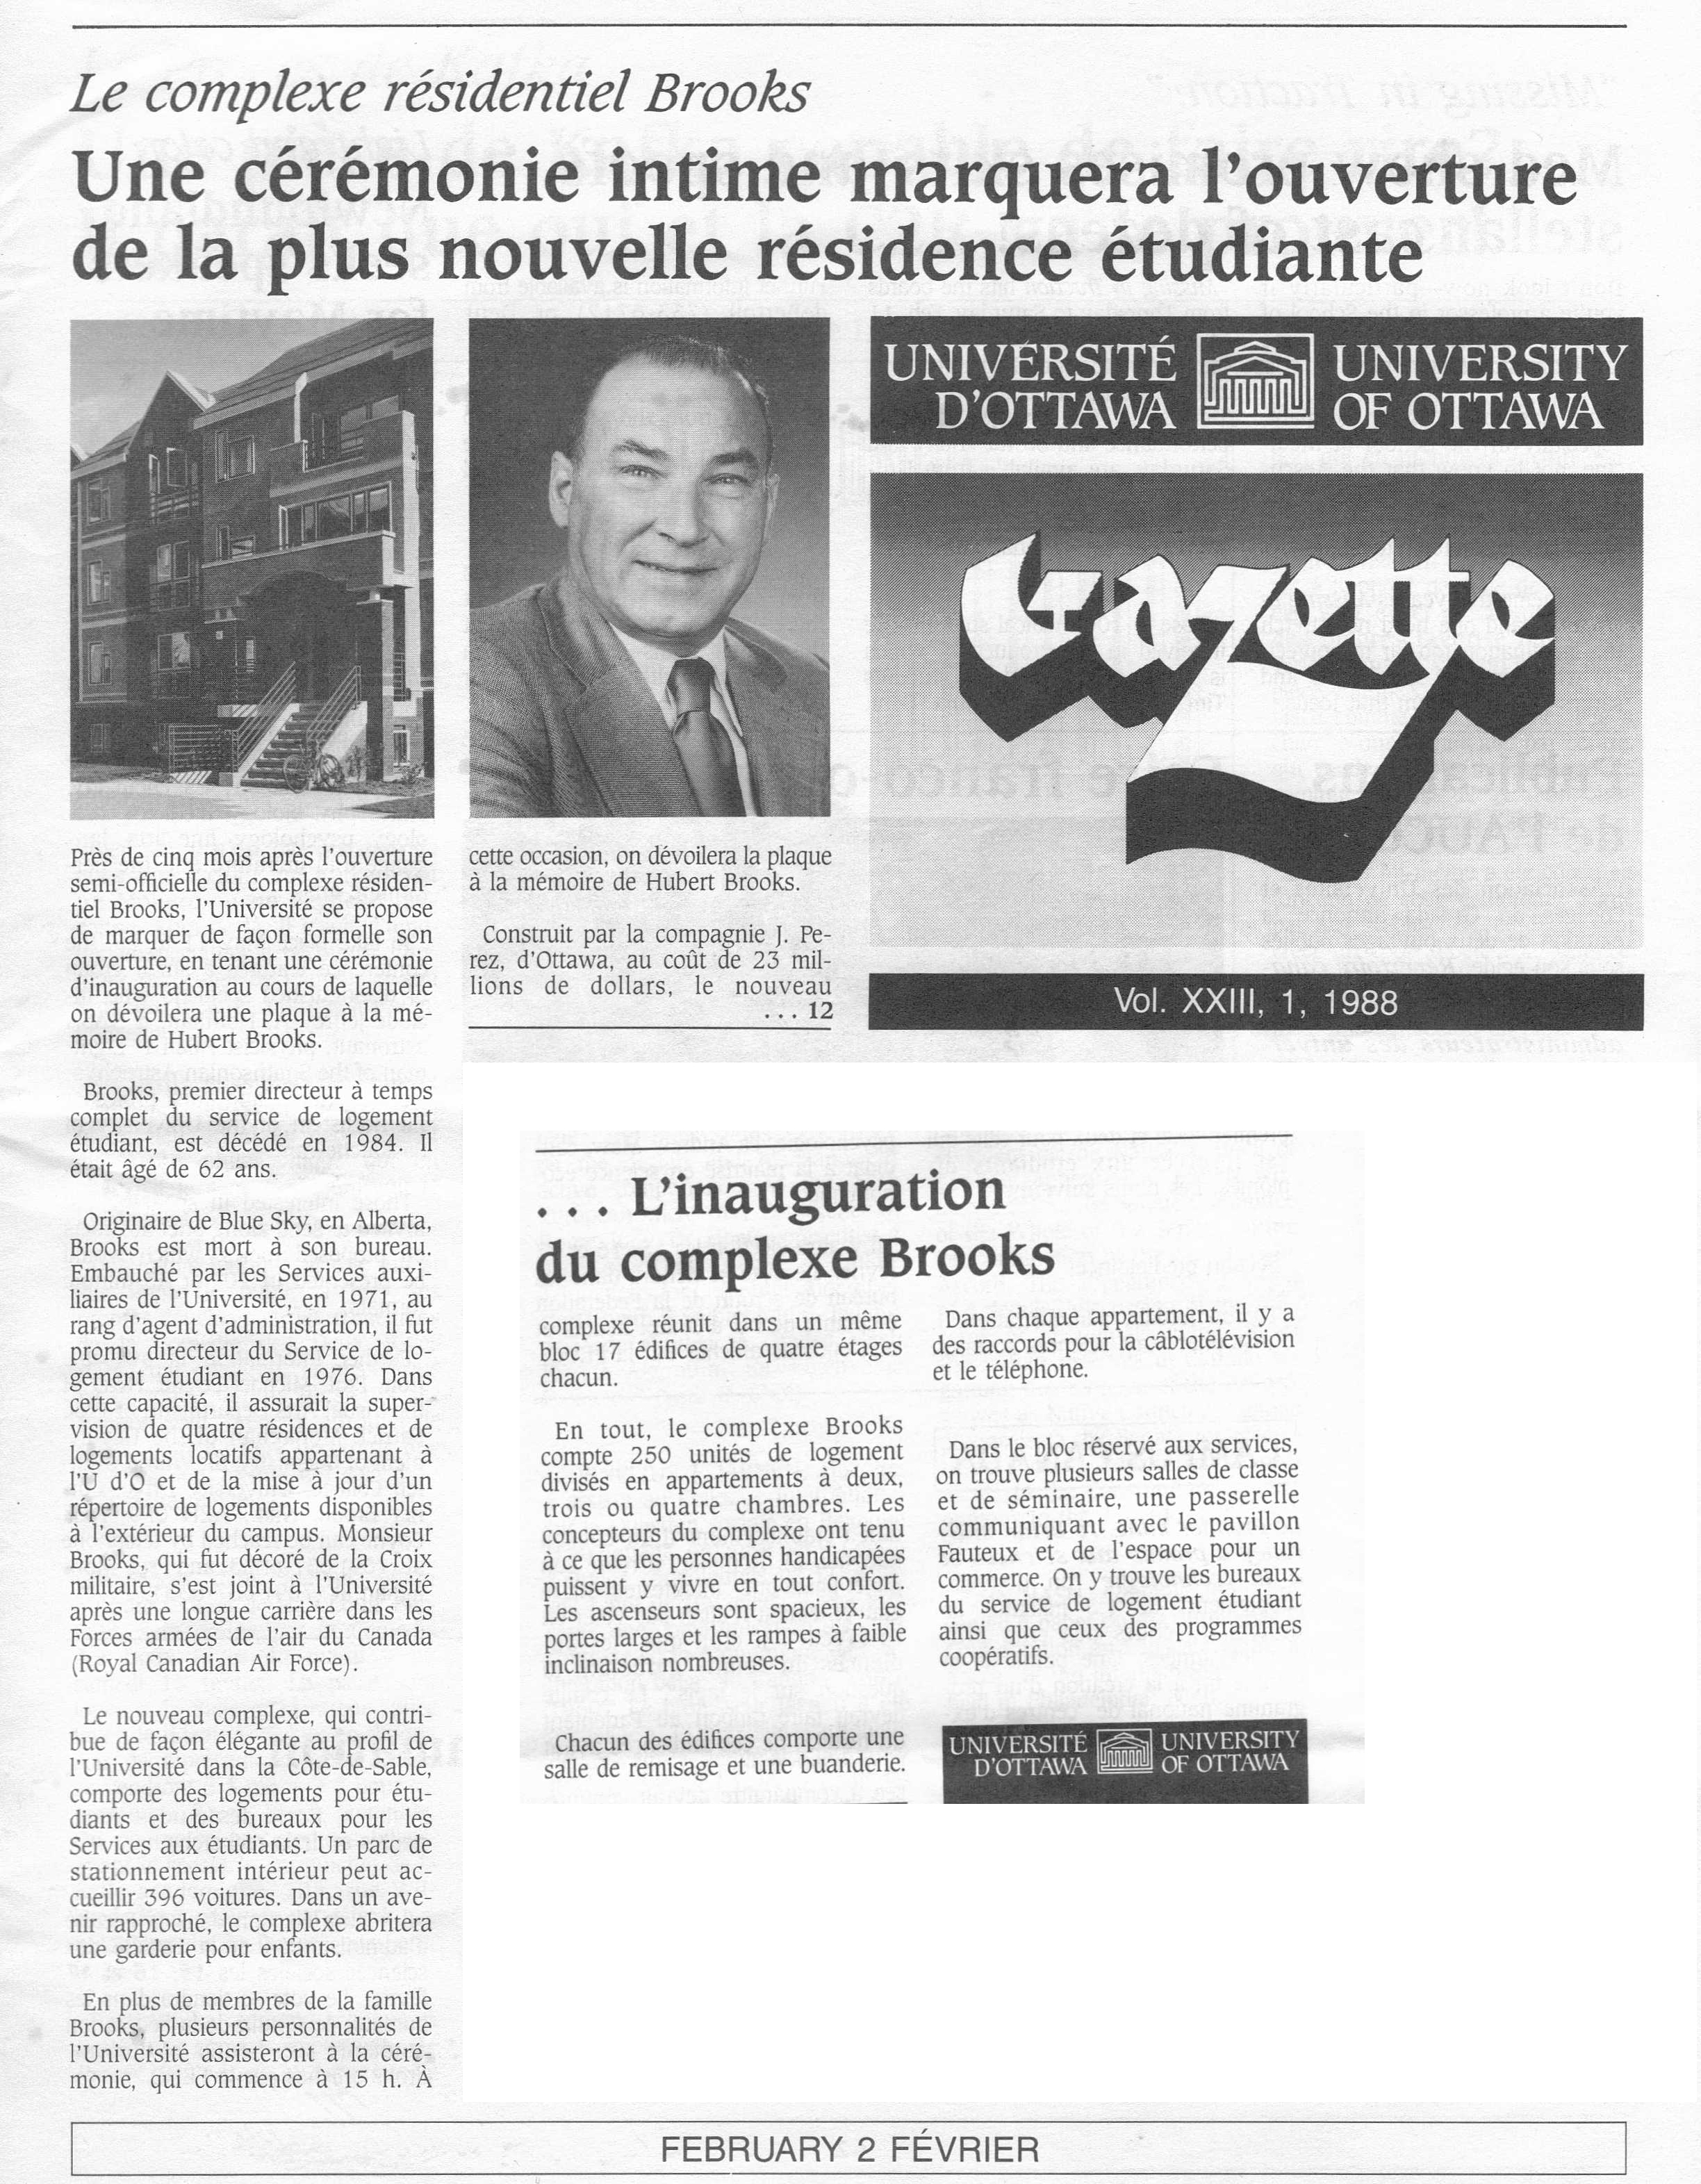 Article on Brooks Residence University of Ottawa Gazette VOL XXIII 1 1988 page 1 